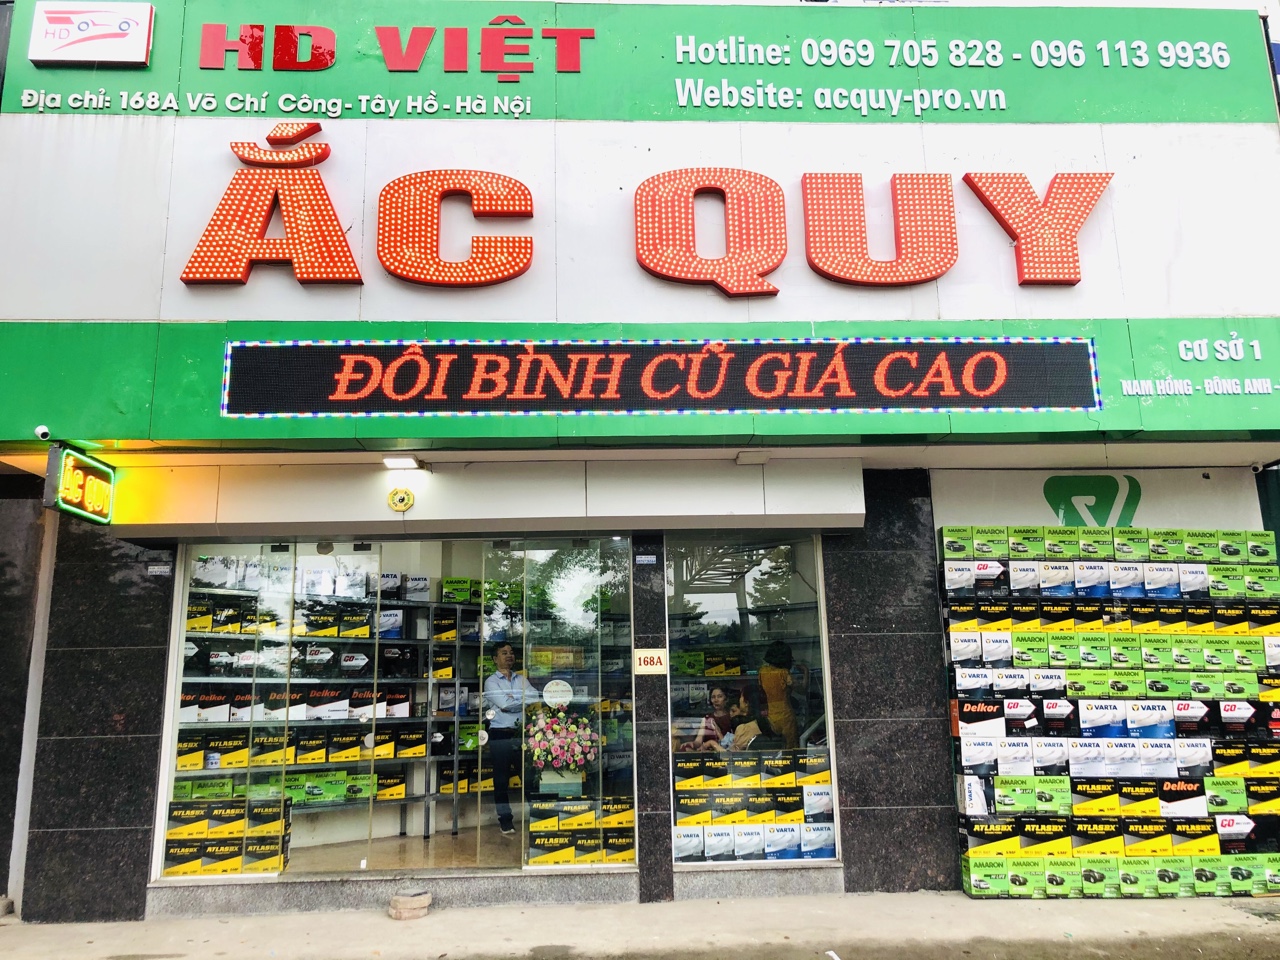 HD Việt - Thay Ắc quy, câu bình ắc quy tận nơi lạc lê văn lương cầu giấy - thanh xuân hà nội